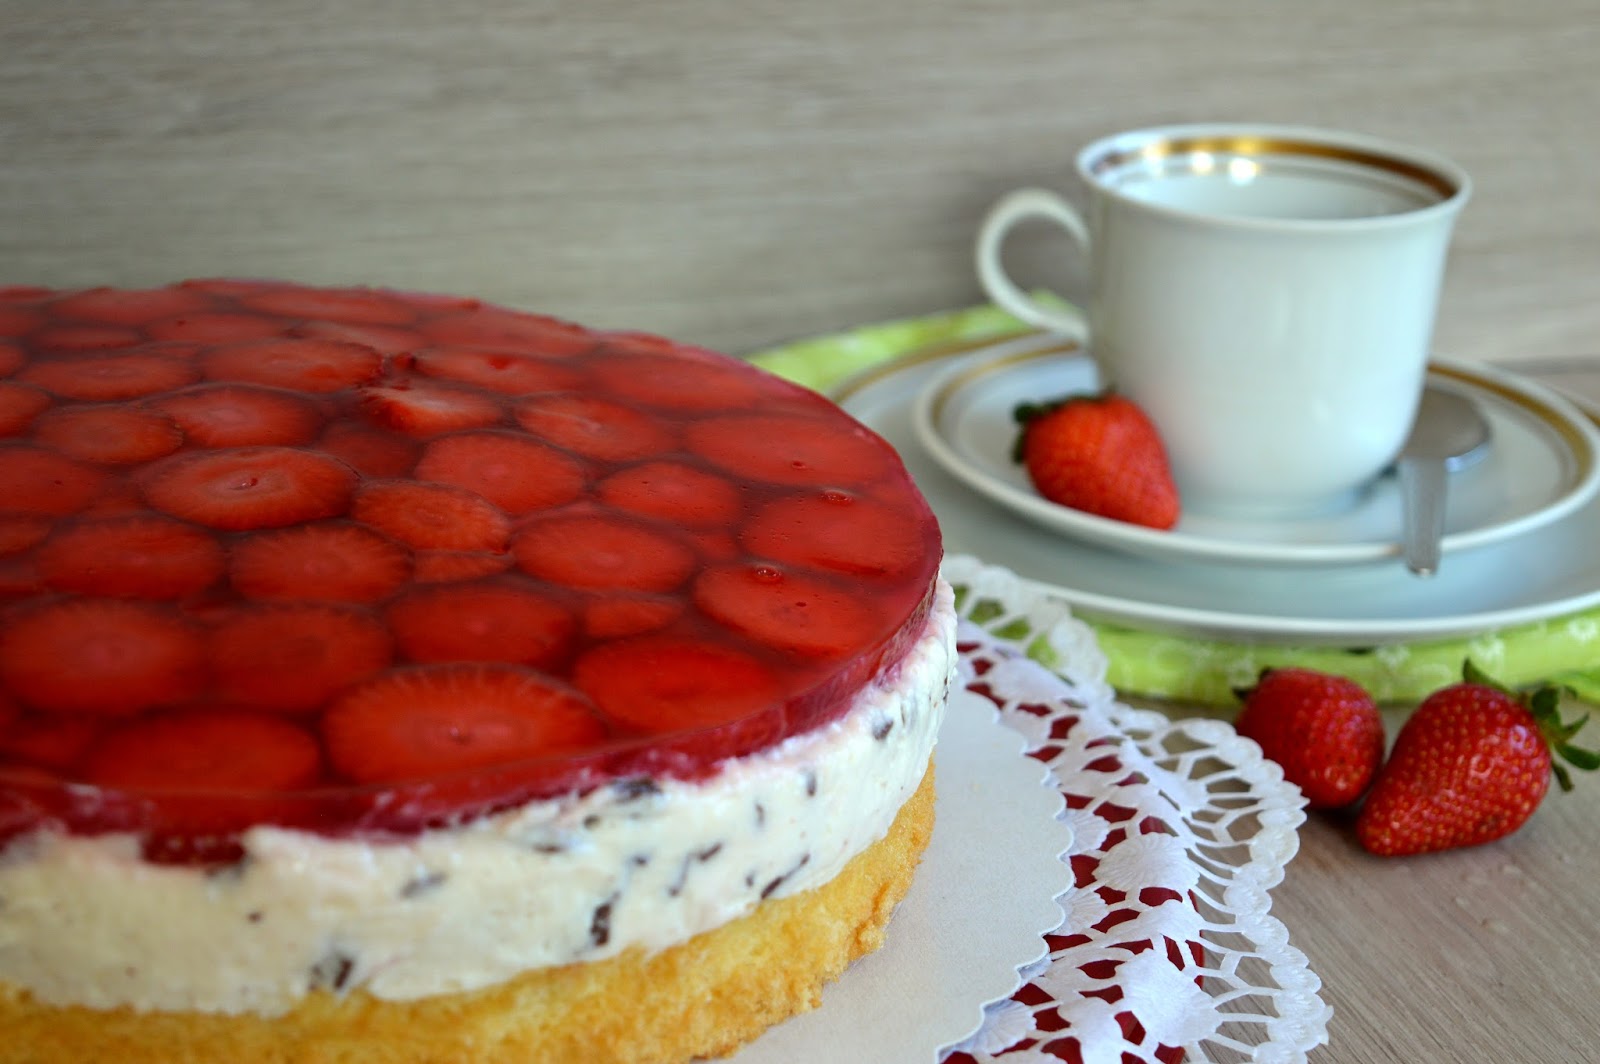 Julias zuckersüße Kuchenwelt: Erdbeer-Stracciatella-Torte